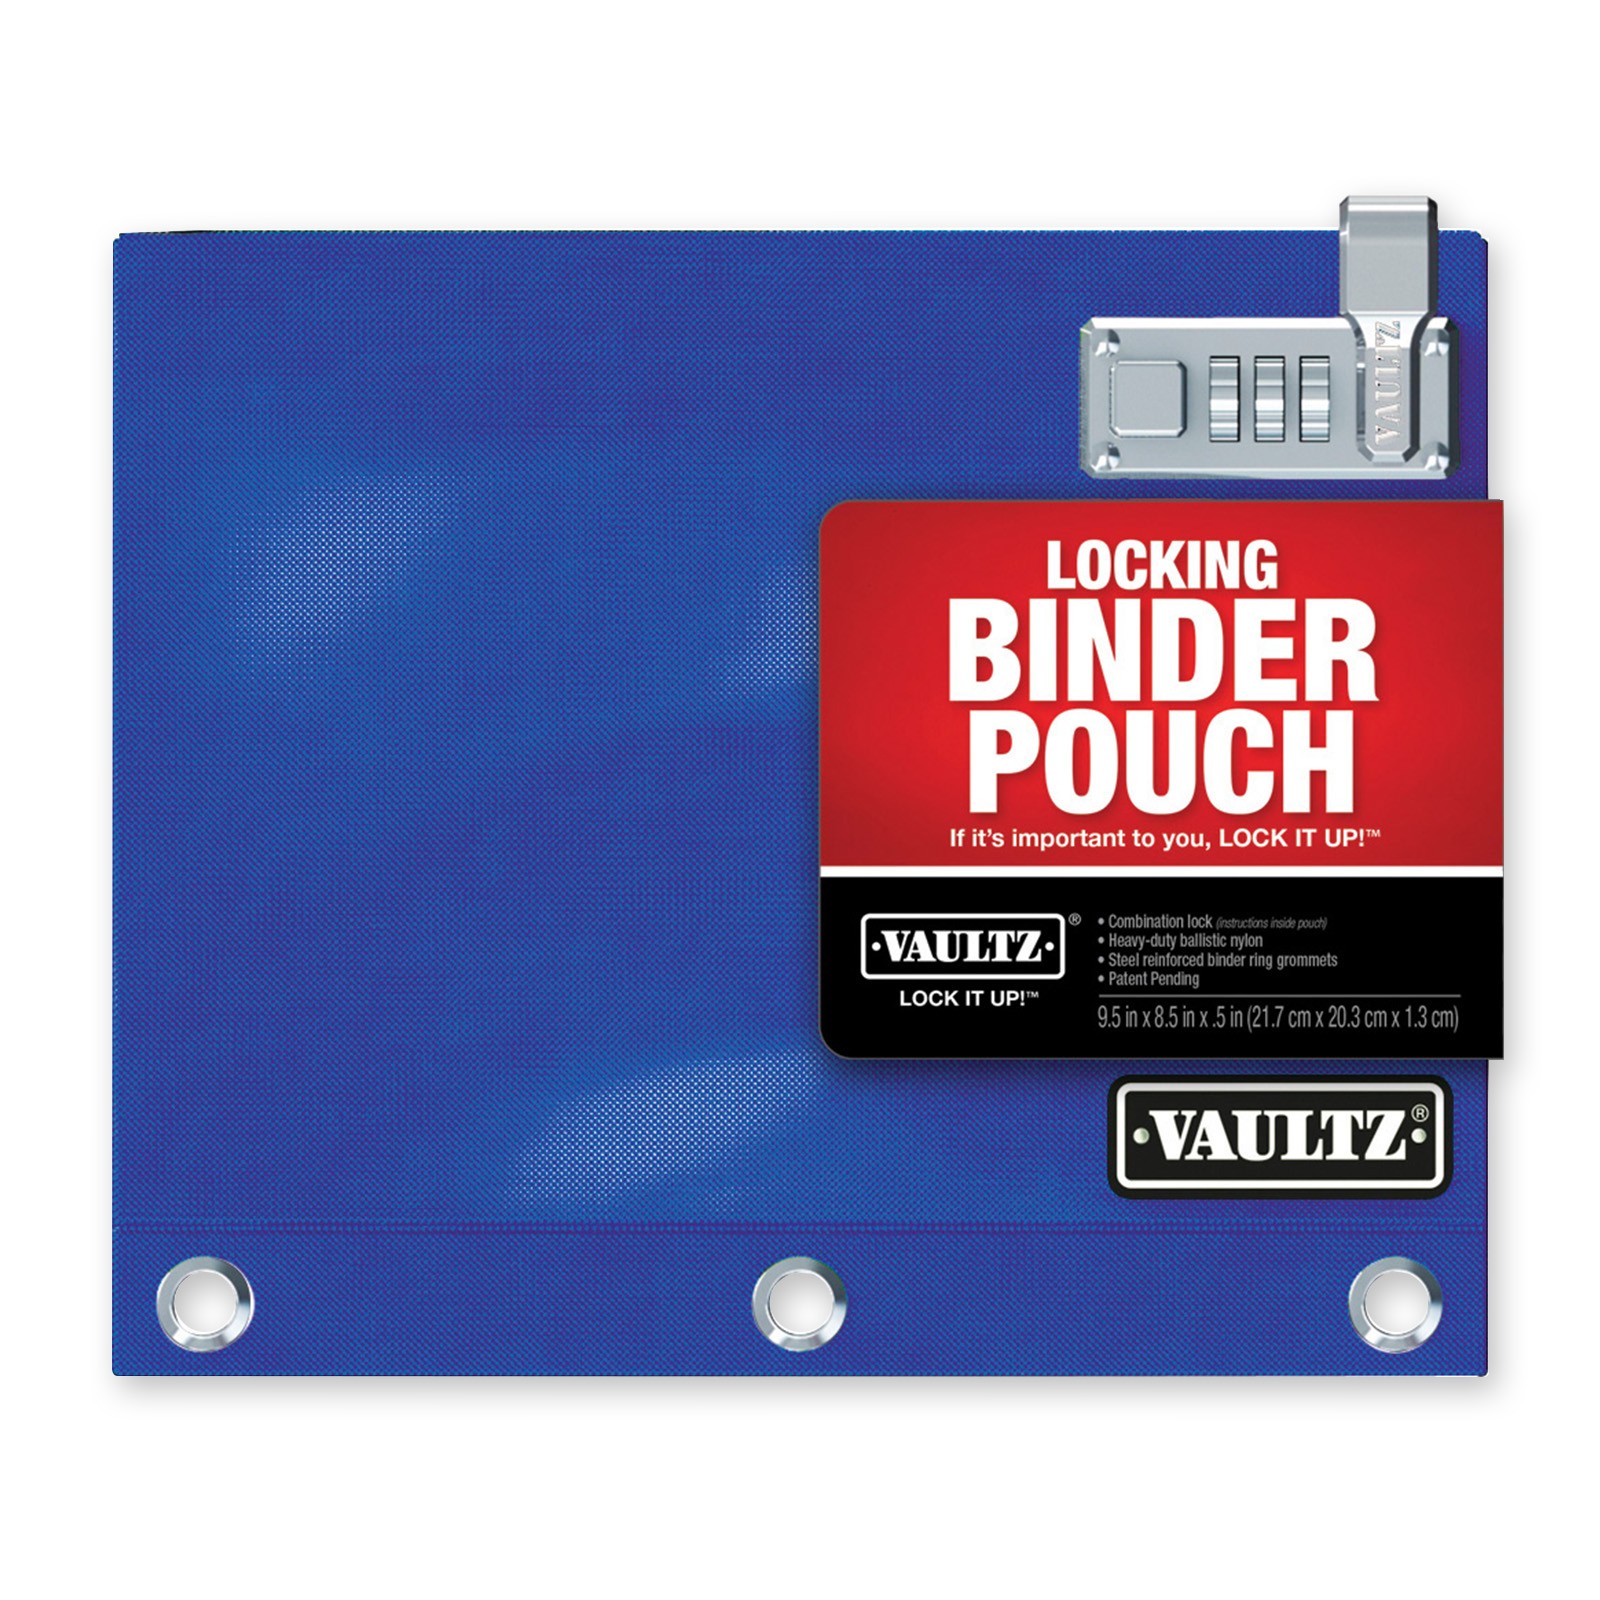 8 x 10 Inches Blue Vaultz Locking Binder Pouch VZ00519